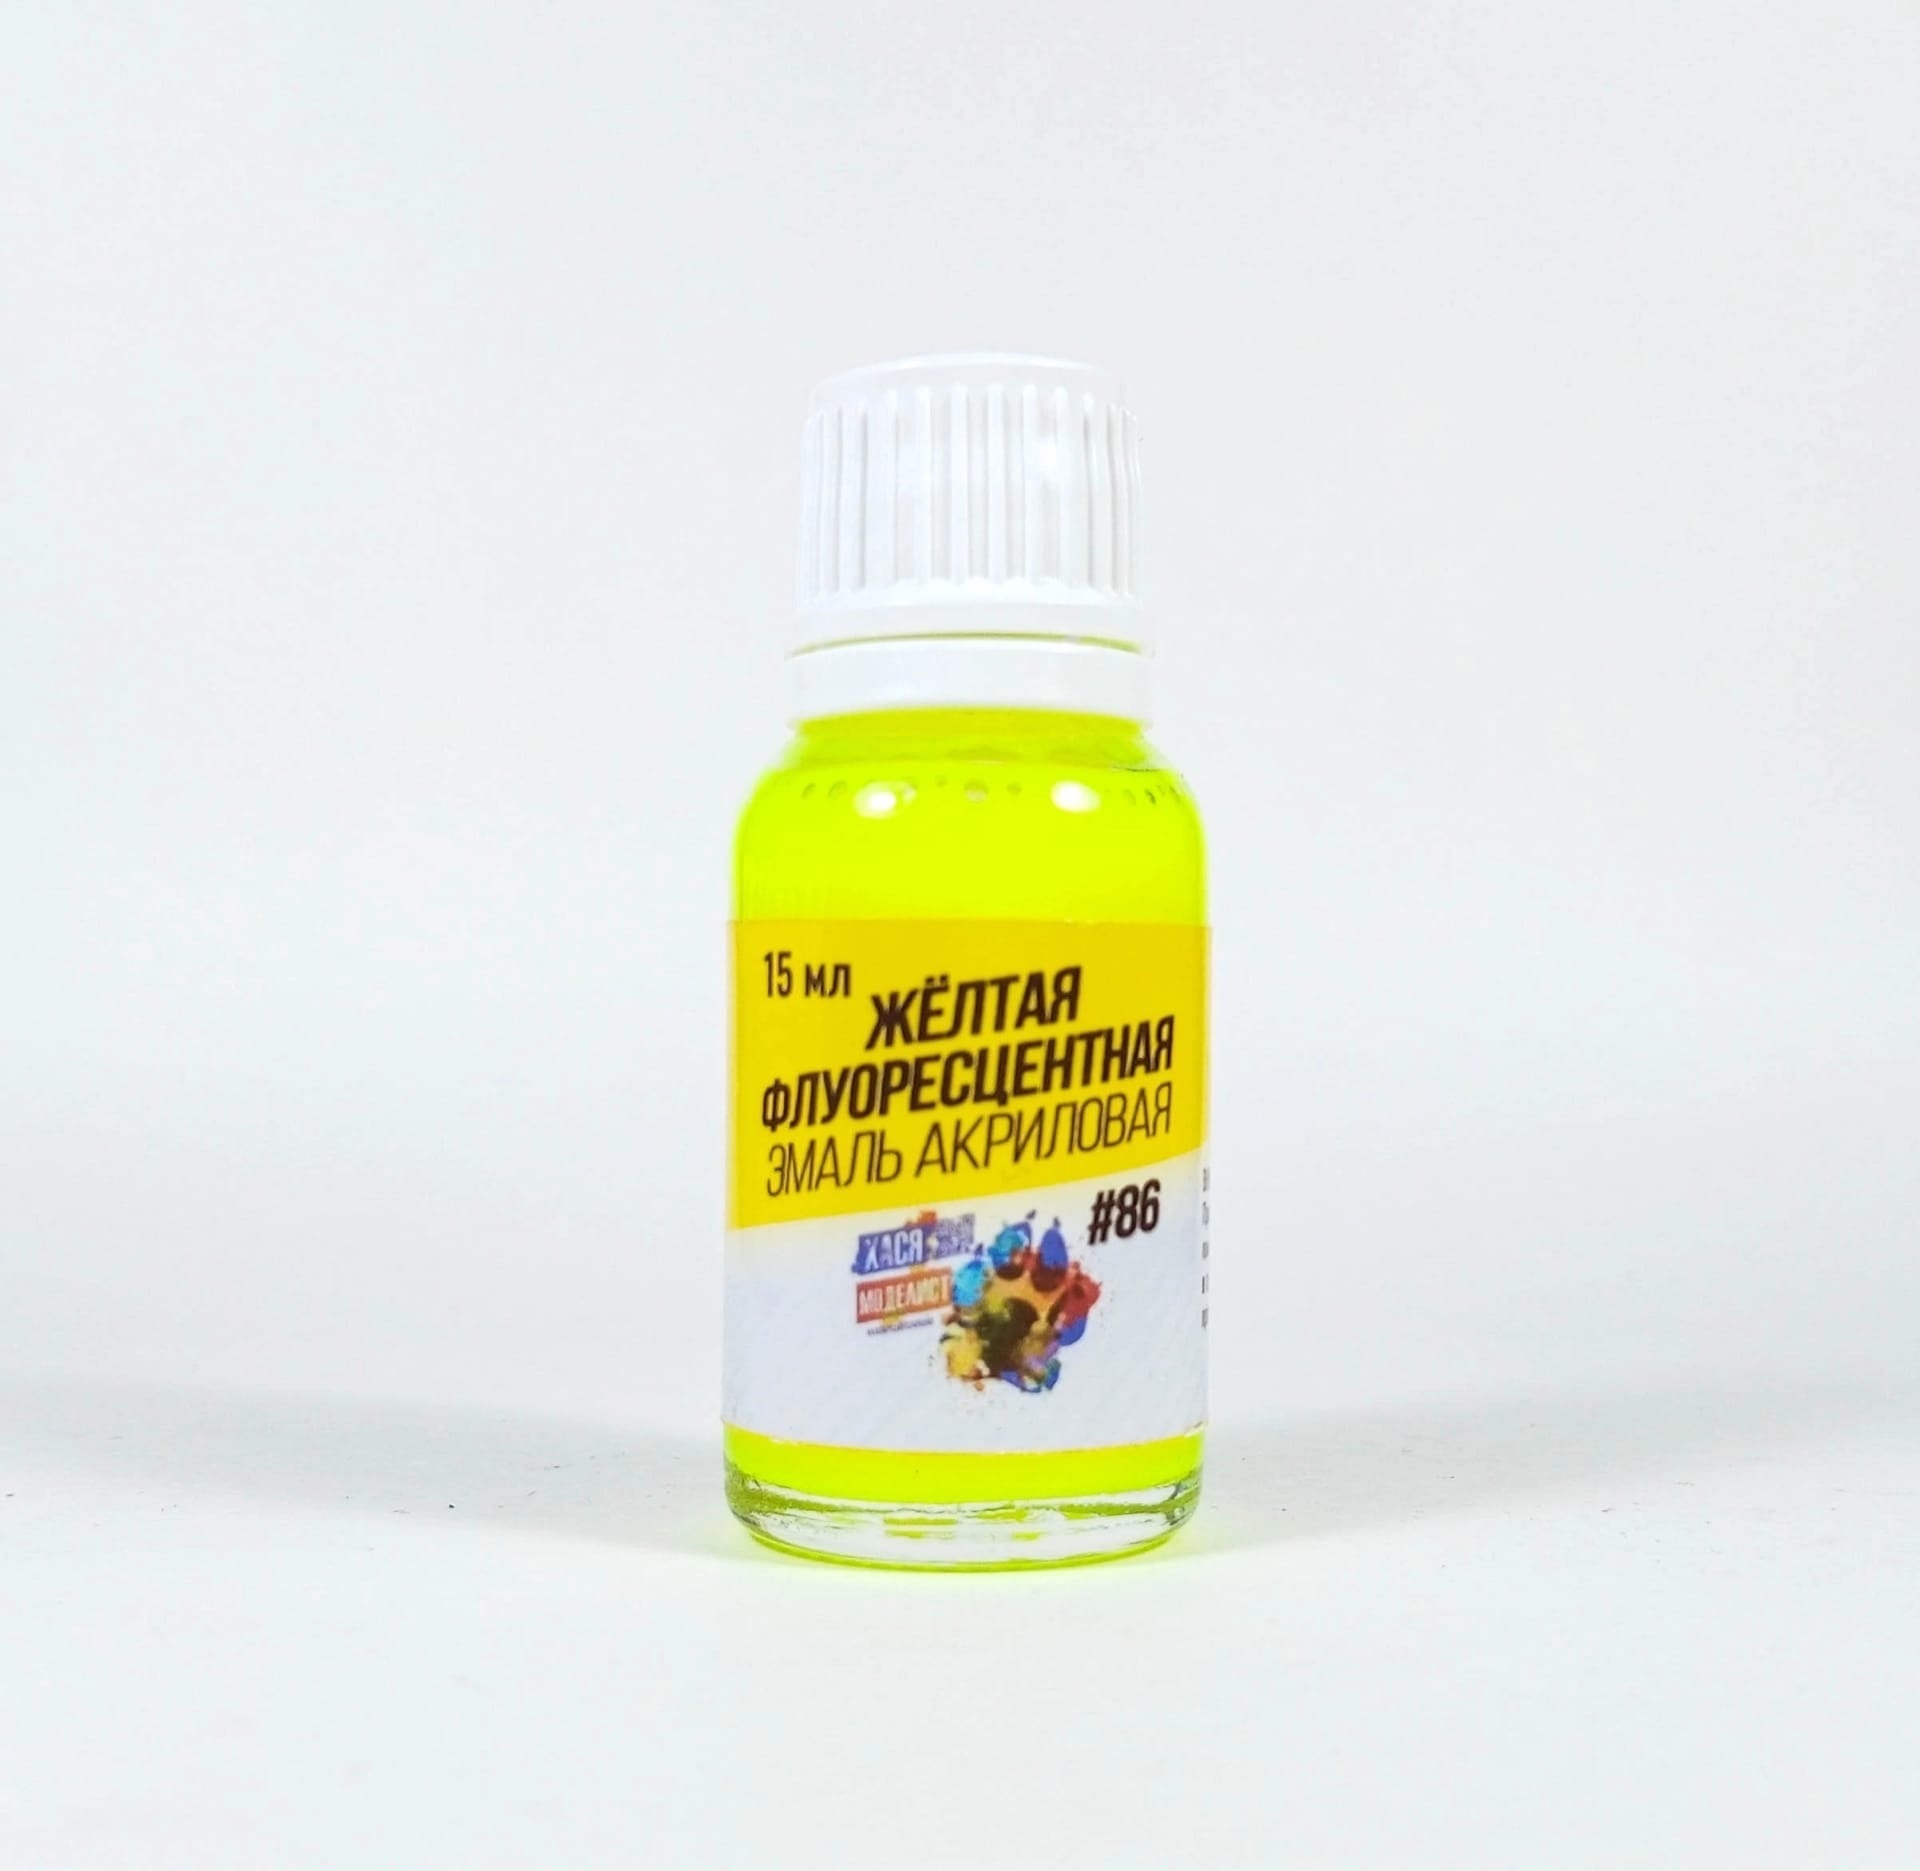 #86 Hasya Modeler Acrylic fluorescent yellow enamel, 15 ml